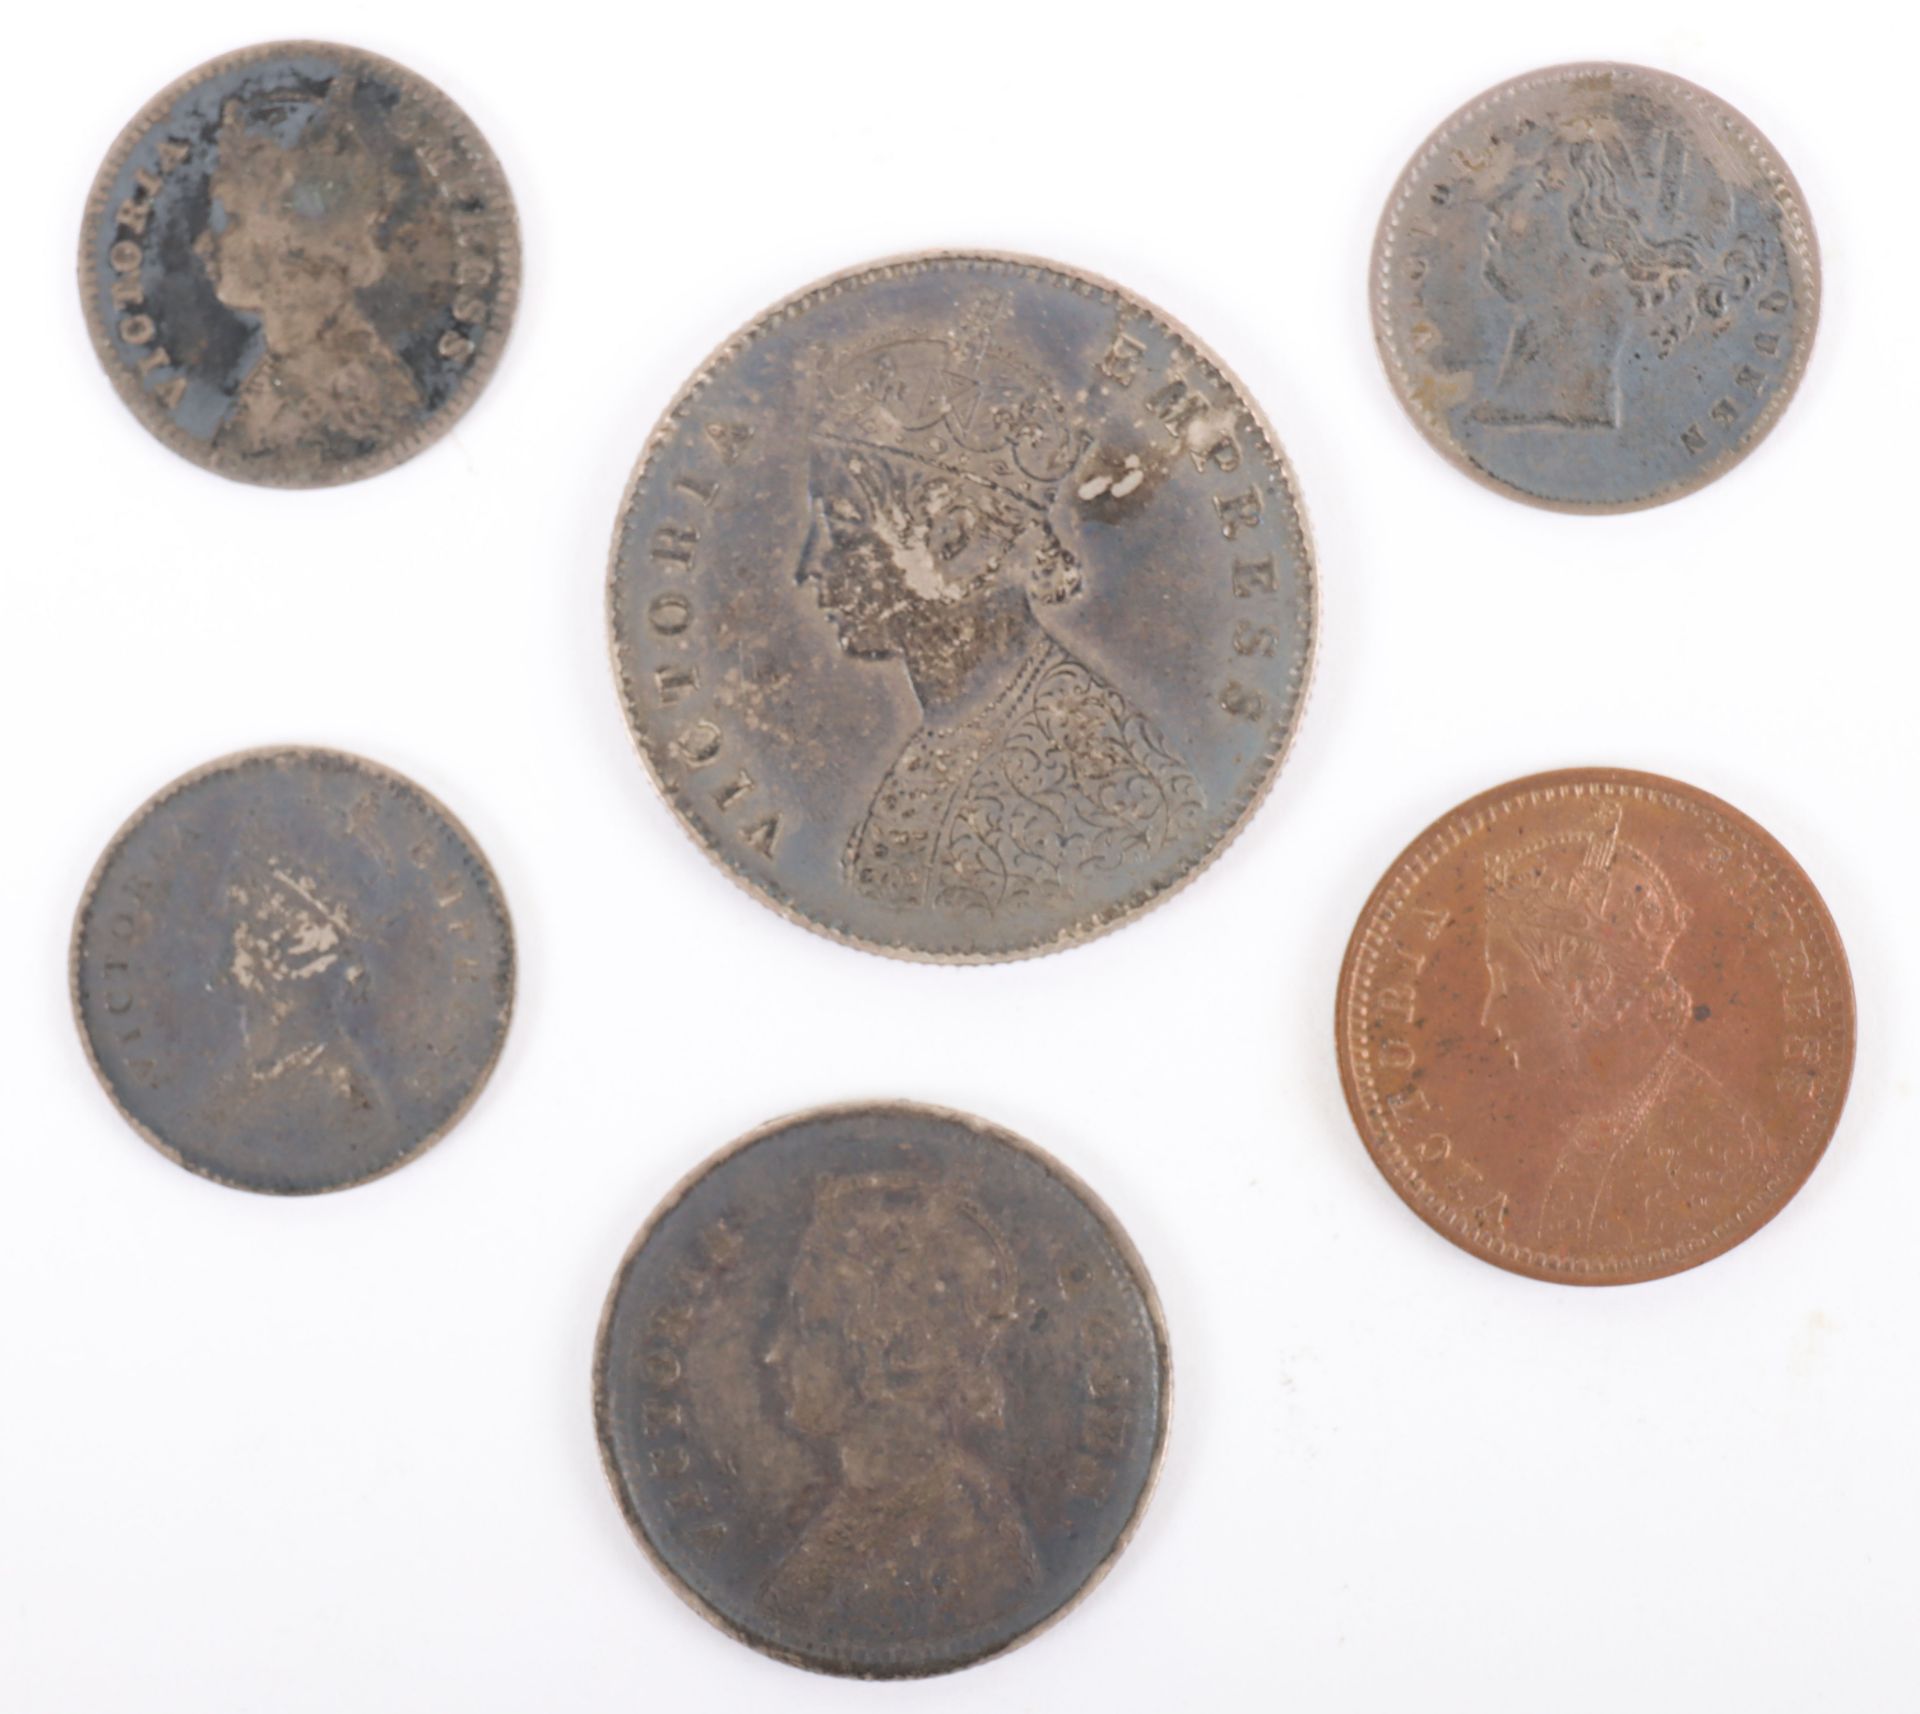 British India, Victoria (1837-1901), Half Rupee 1893, Quarter Rupee 1862, Two Annas 1841, 1878 and 1